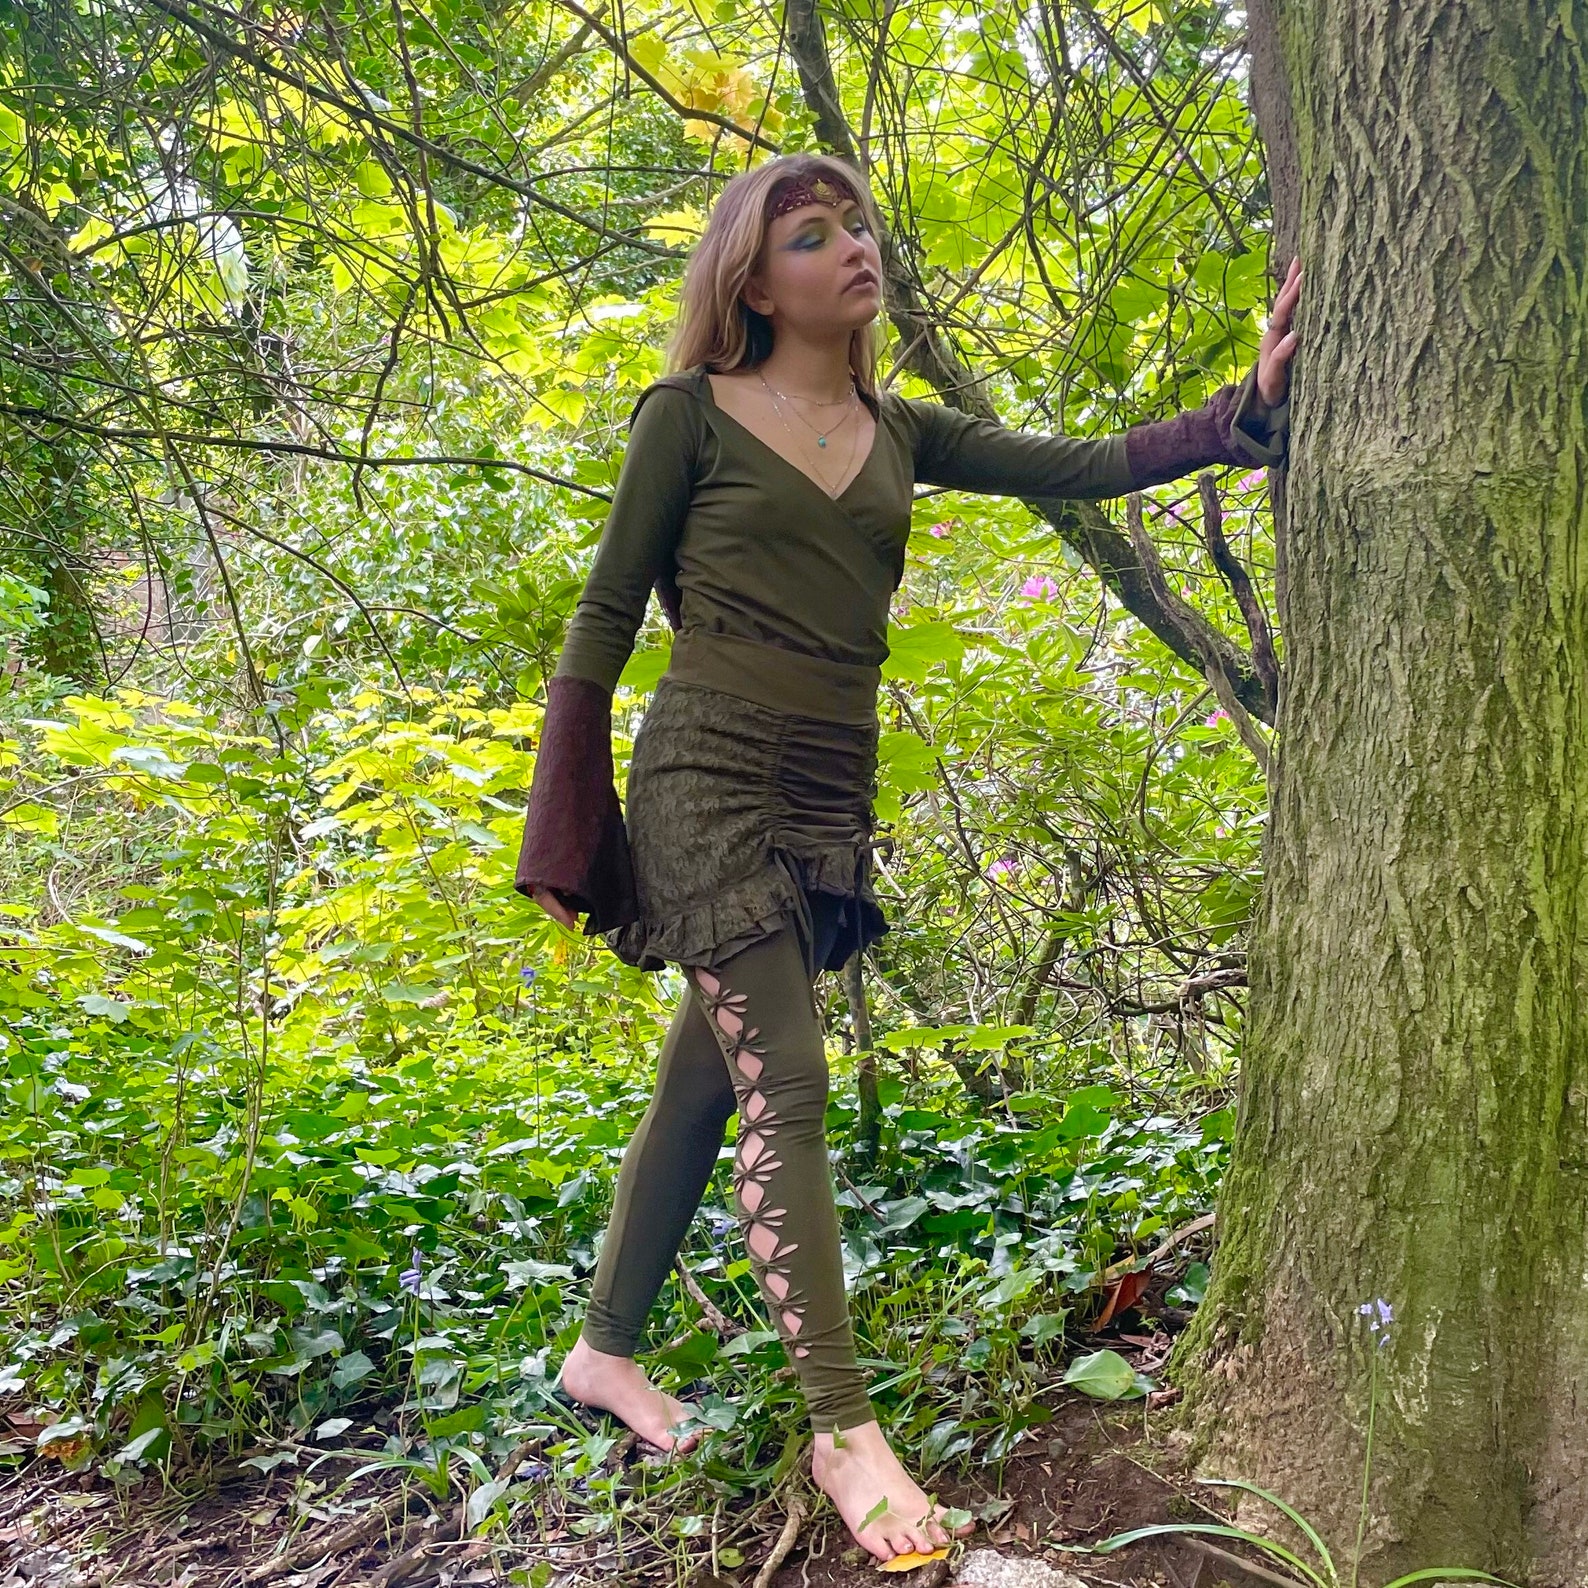 Forest Clothing Pixie Skirt Green Clothing Khaki Skirt | Etsy